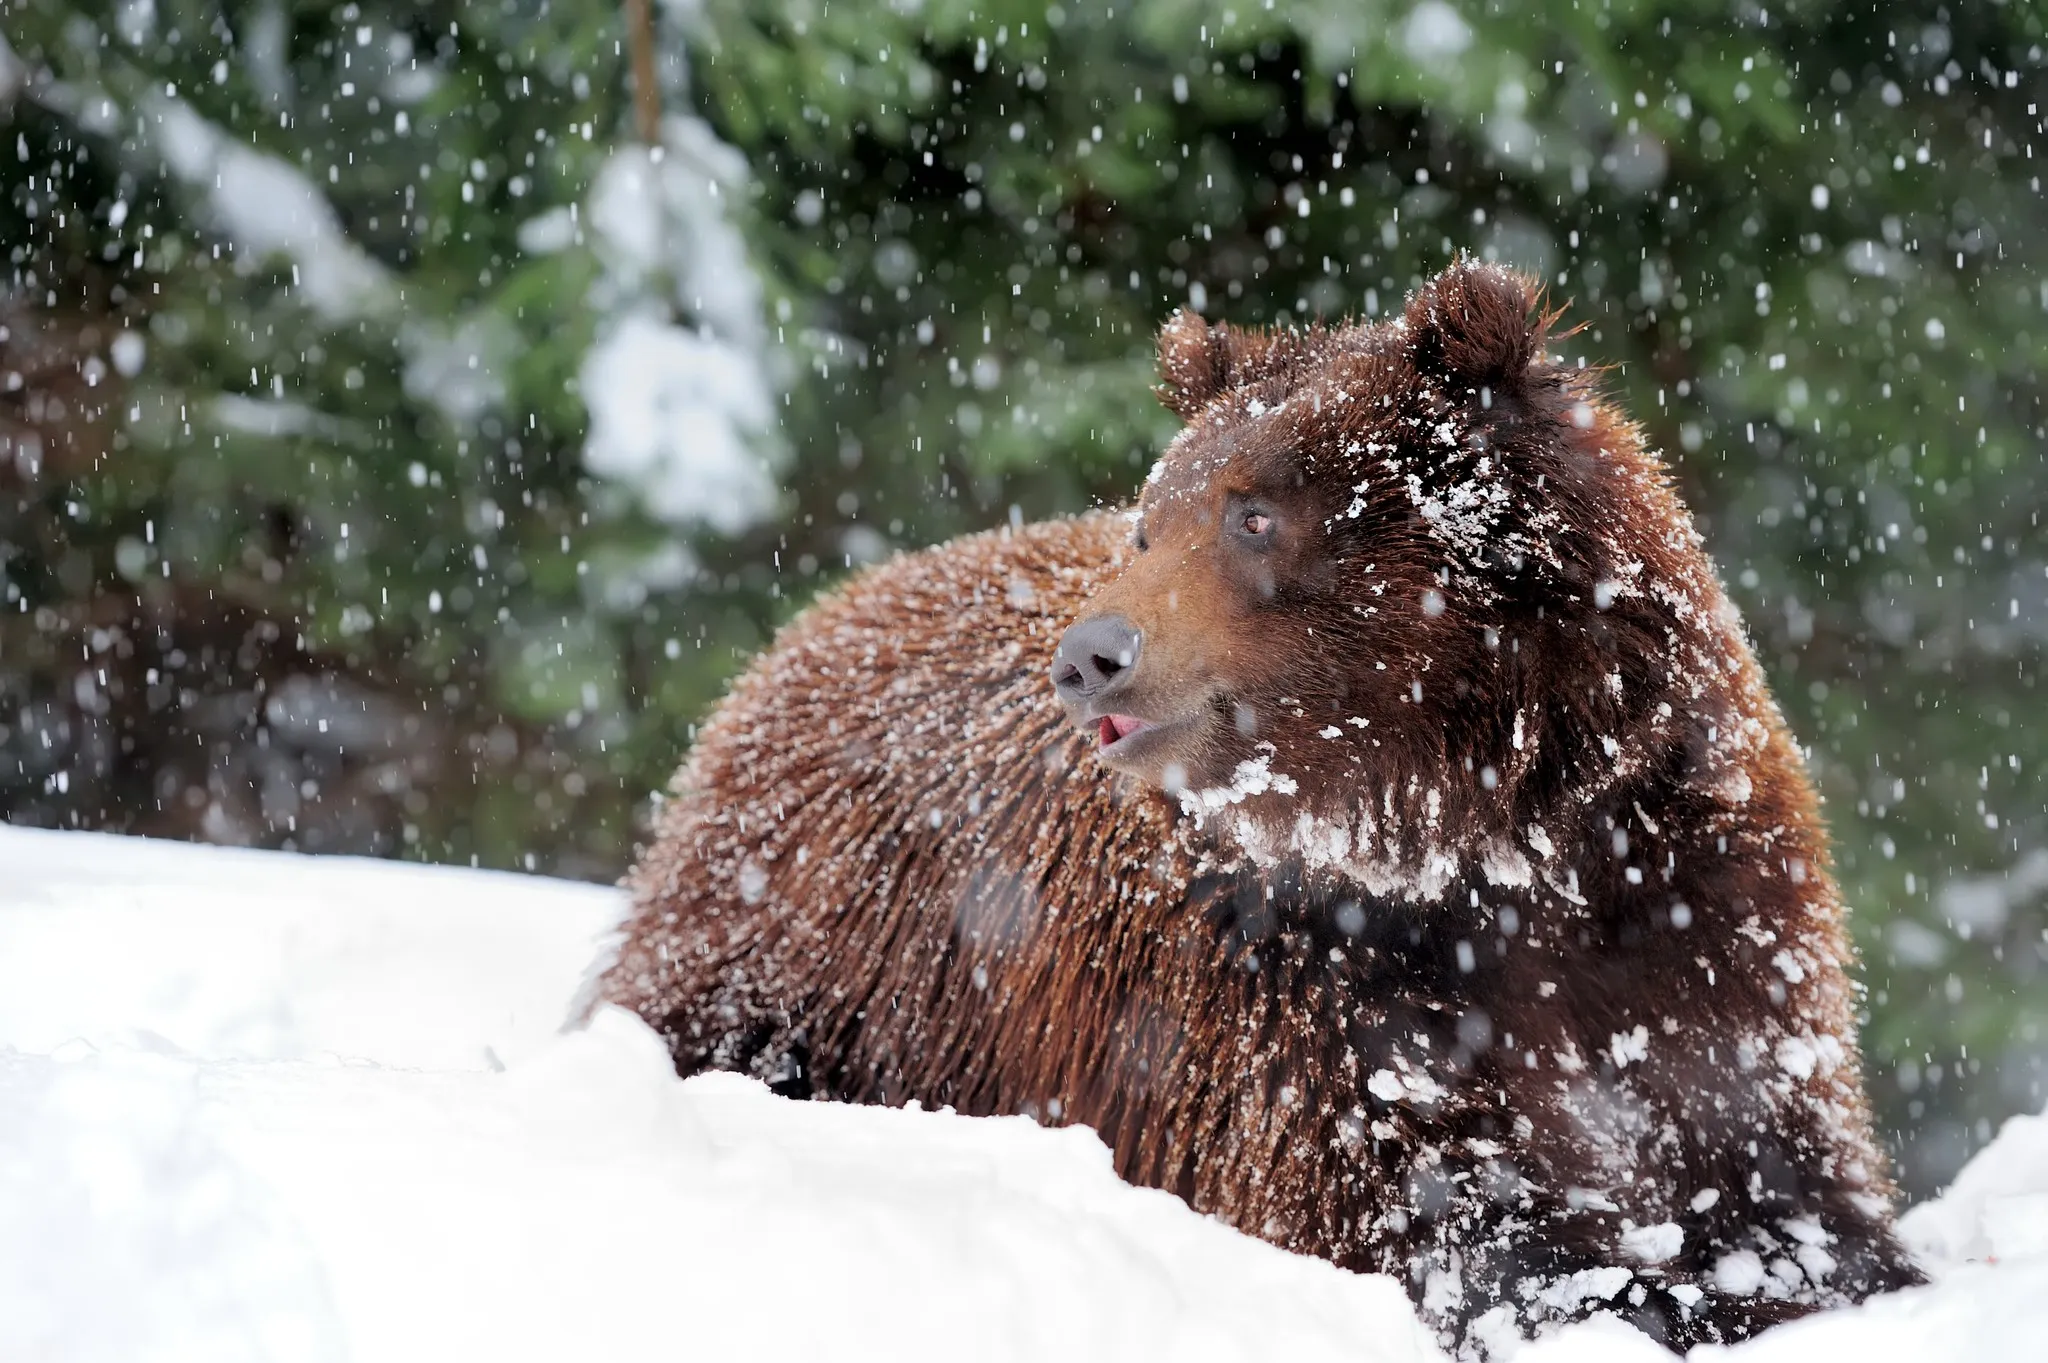 Зимний сон для бурых медведей начинается между декабрем и февралем.